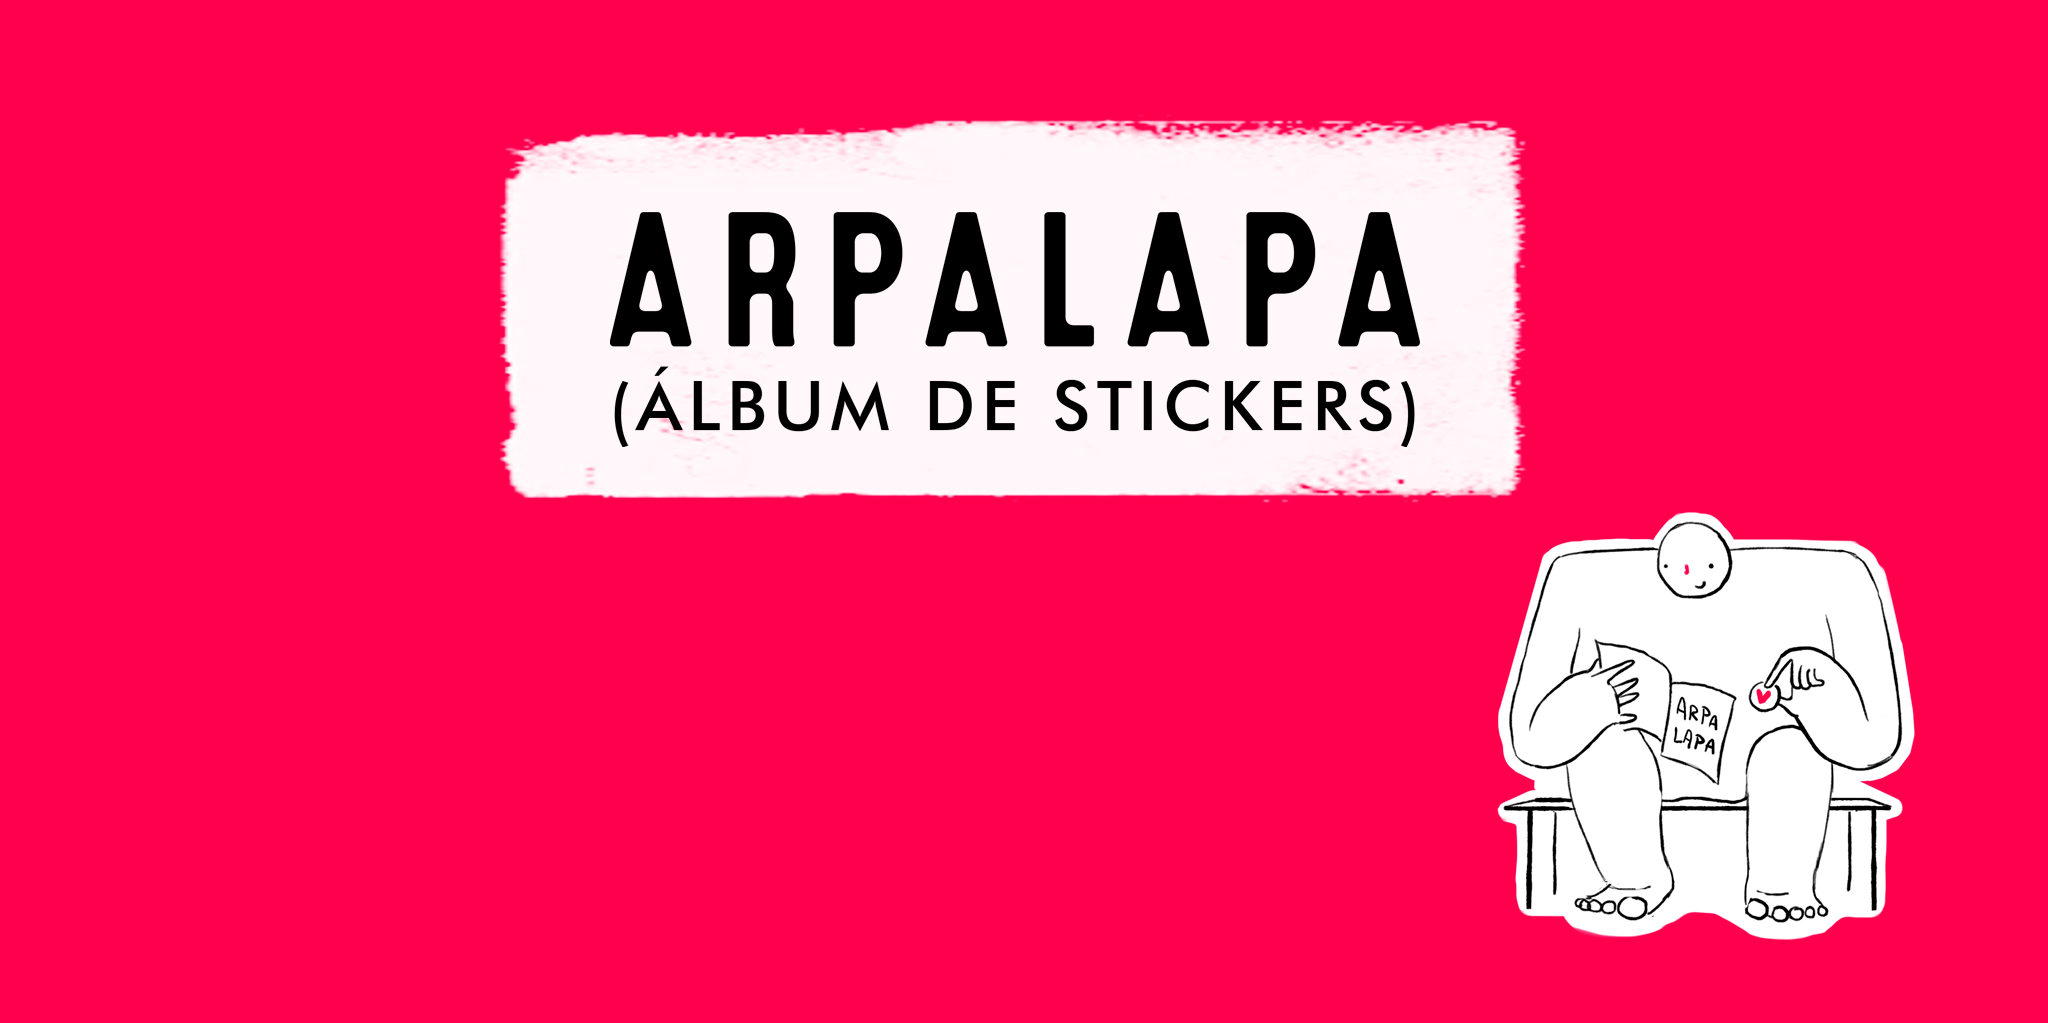 La Arpalapa álbum de stickers coleccionables